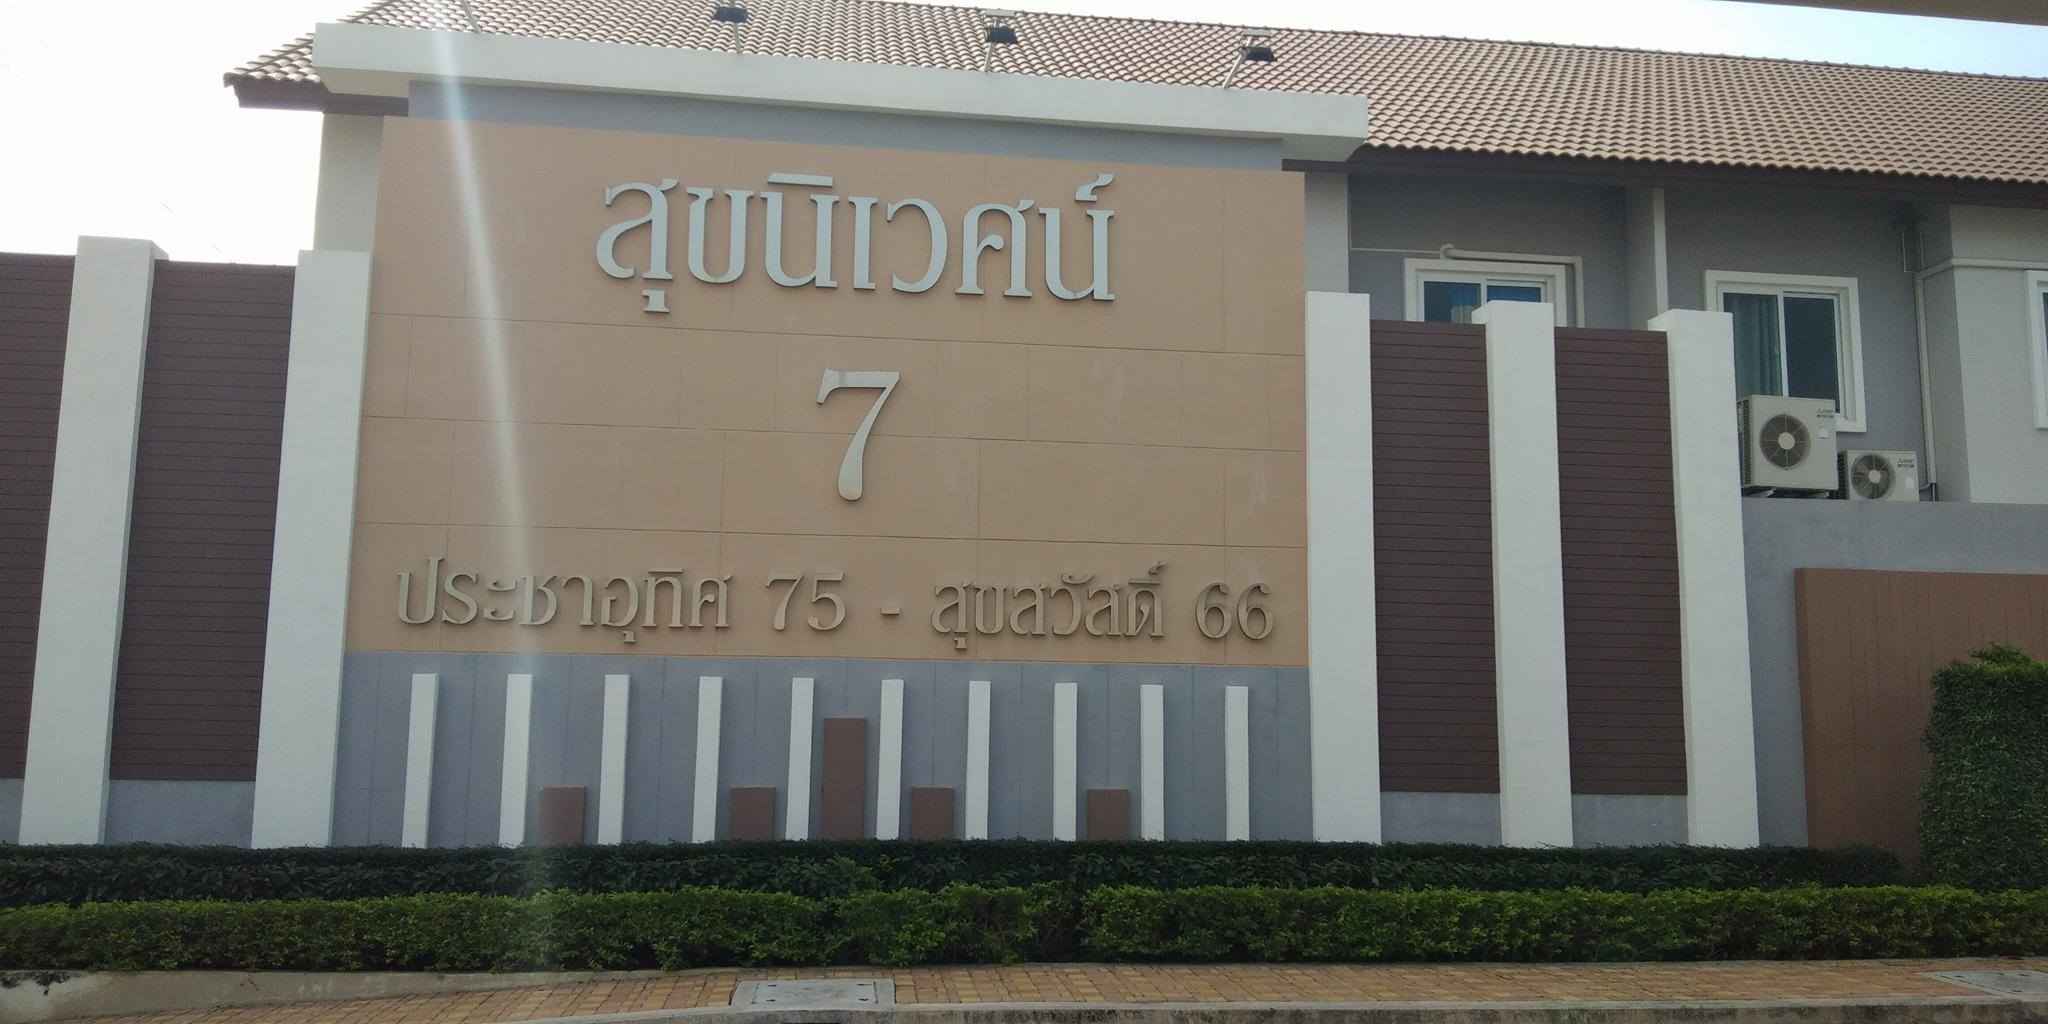 บ้านสุขนิเวศน์ 7 ประชาอุทิศ 75-สุขสวัสดิ์ 66 Baan Sukniwet 7 Prachauthit 75-Suksawat 66